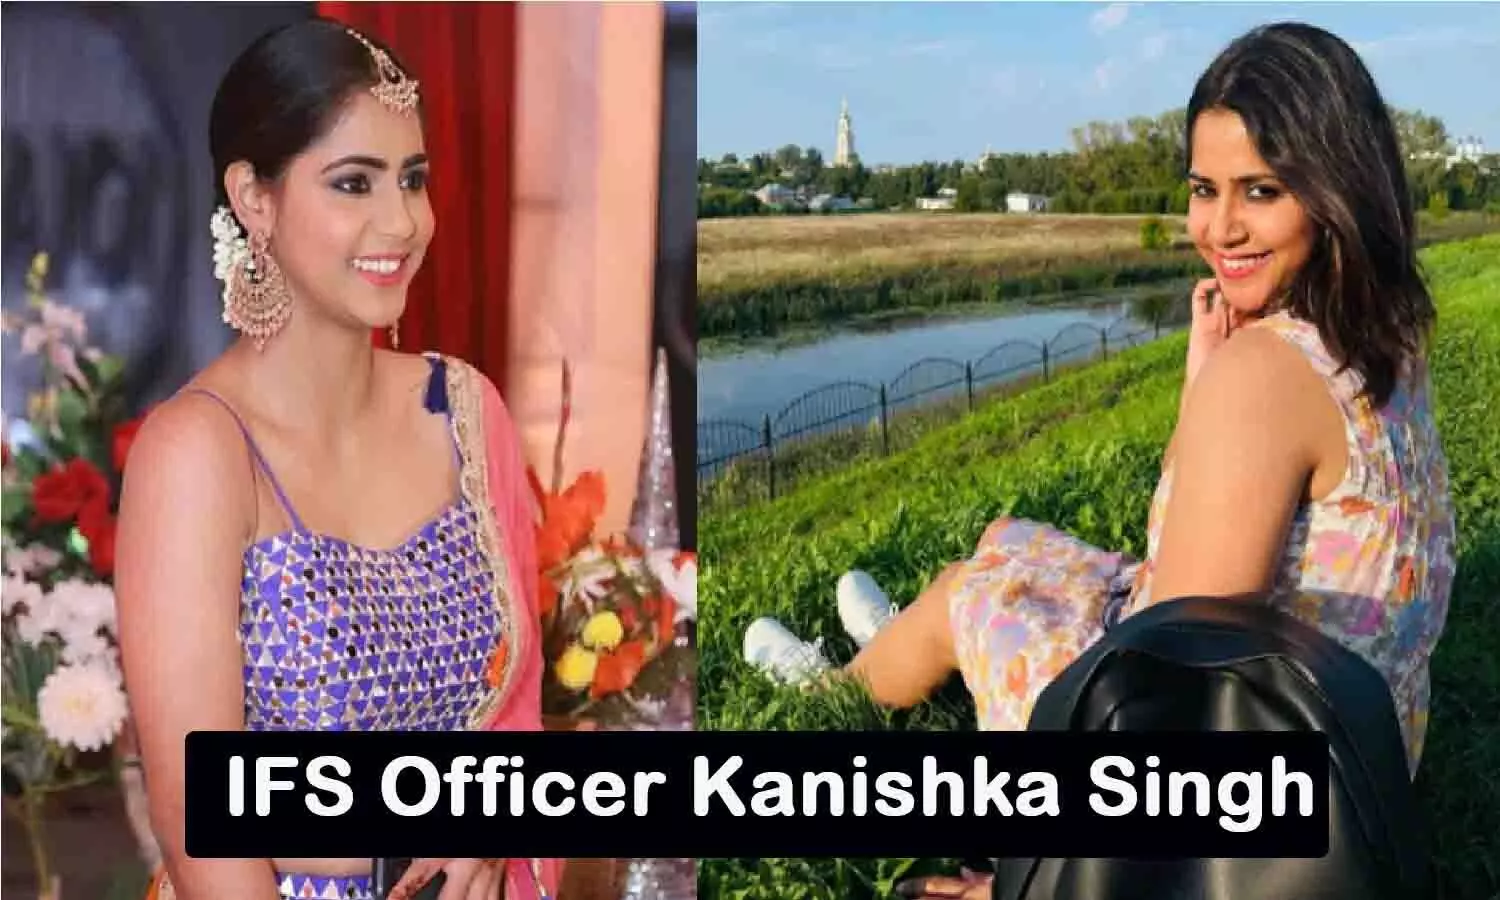 IFS Officer Kanishka Singh